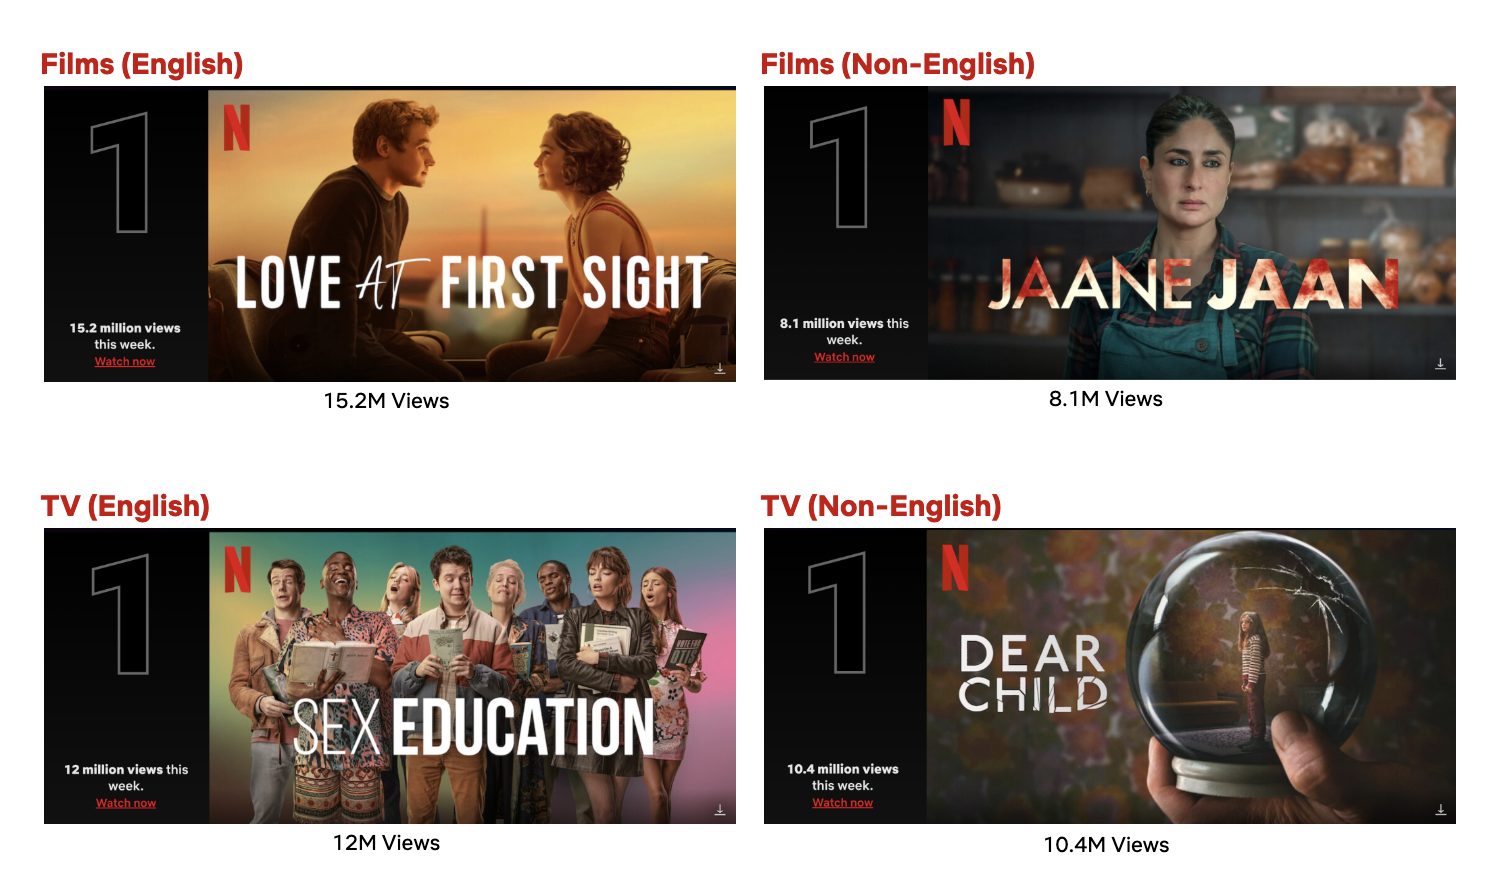 Lançamentos da Netflix em setembro de 2023 tem Sex Education 4 e mais